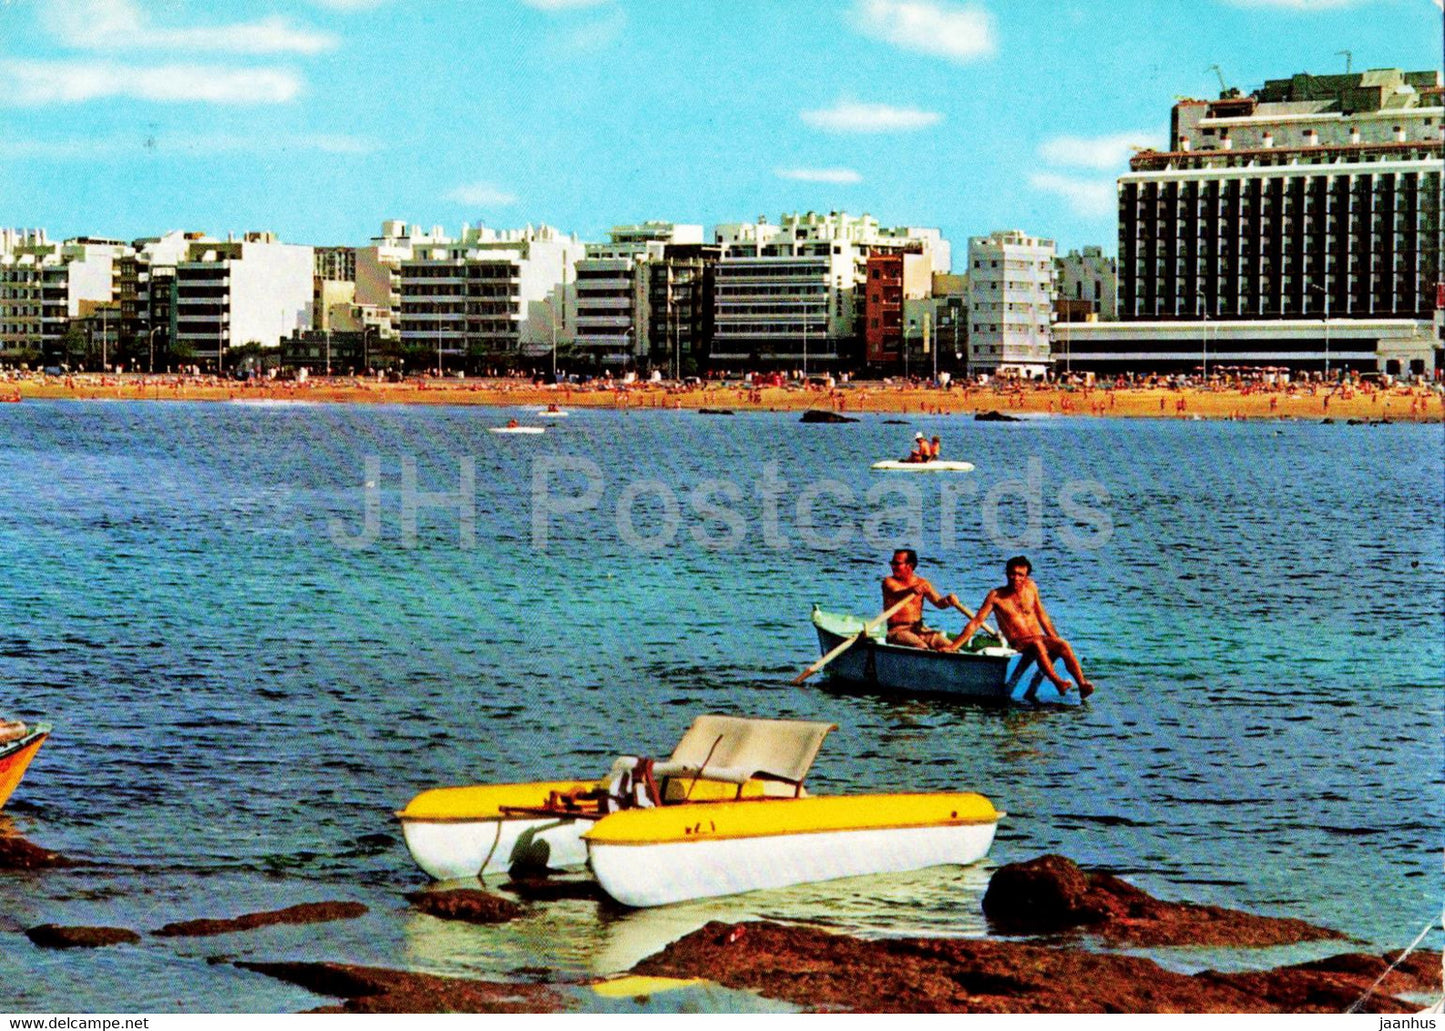 Las Palmas de Gran Canaria - La Playa de Las Canteras - vista desde la barra -  hydrobike - boat - 555 - Spain - unused - JH Postcards